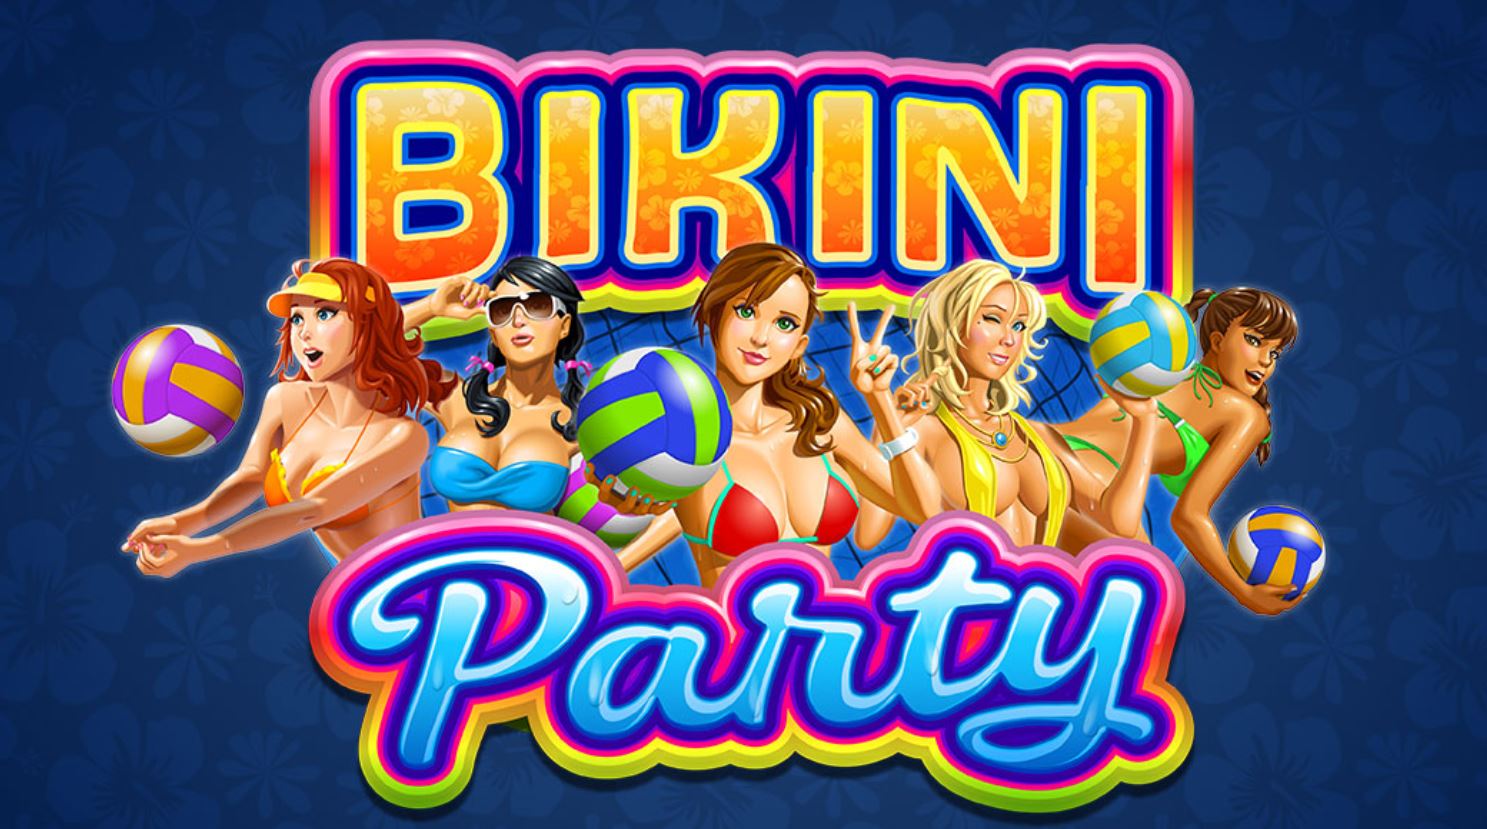 สล็อตMG Pay69slot -ค่ายเกม MG bikini party - เรียนรู้วิธีการเอาชนะสล็อตภายใน 5 นาที 6